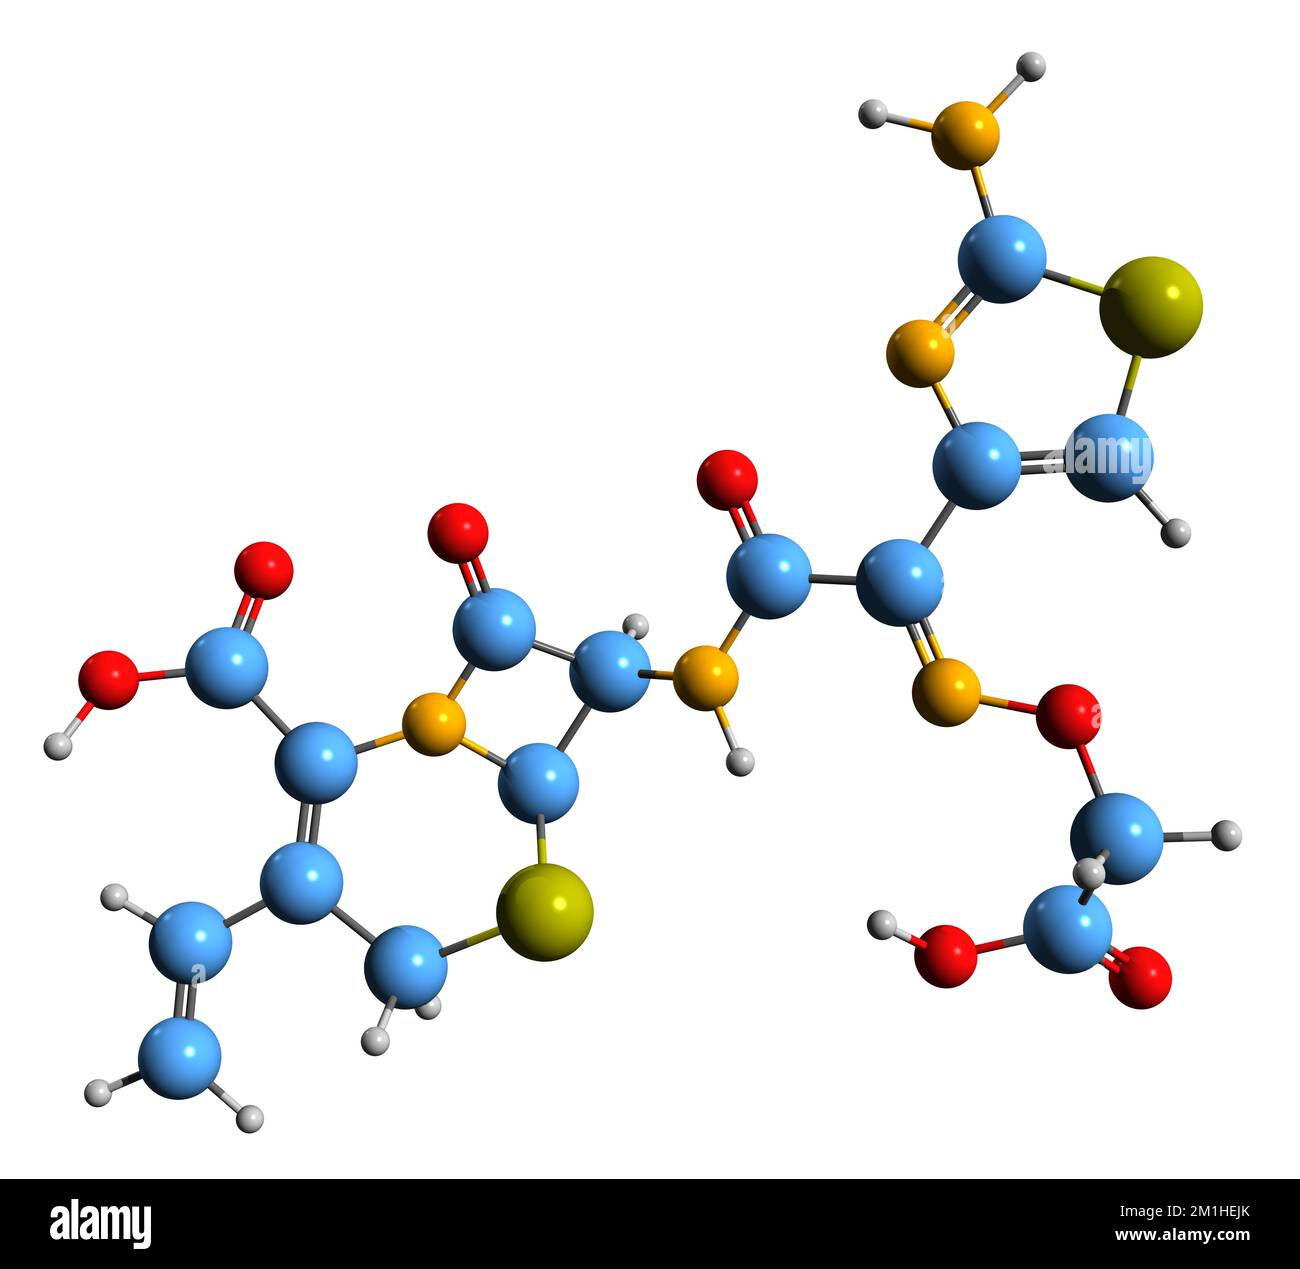 3D-Bild der Cefixime-Skelettformel - molekularchemische Struktur eines auf weißem Hintergrund isolierten Cephalosporin-Antibiotikums Stockfoto